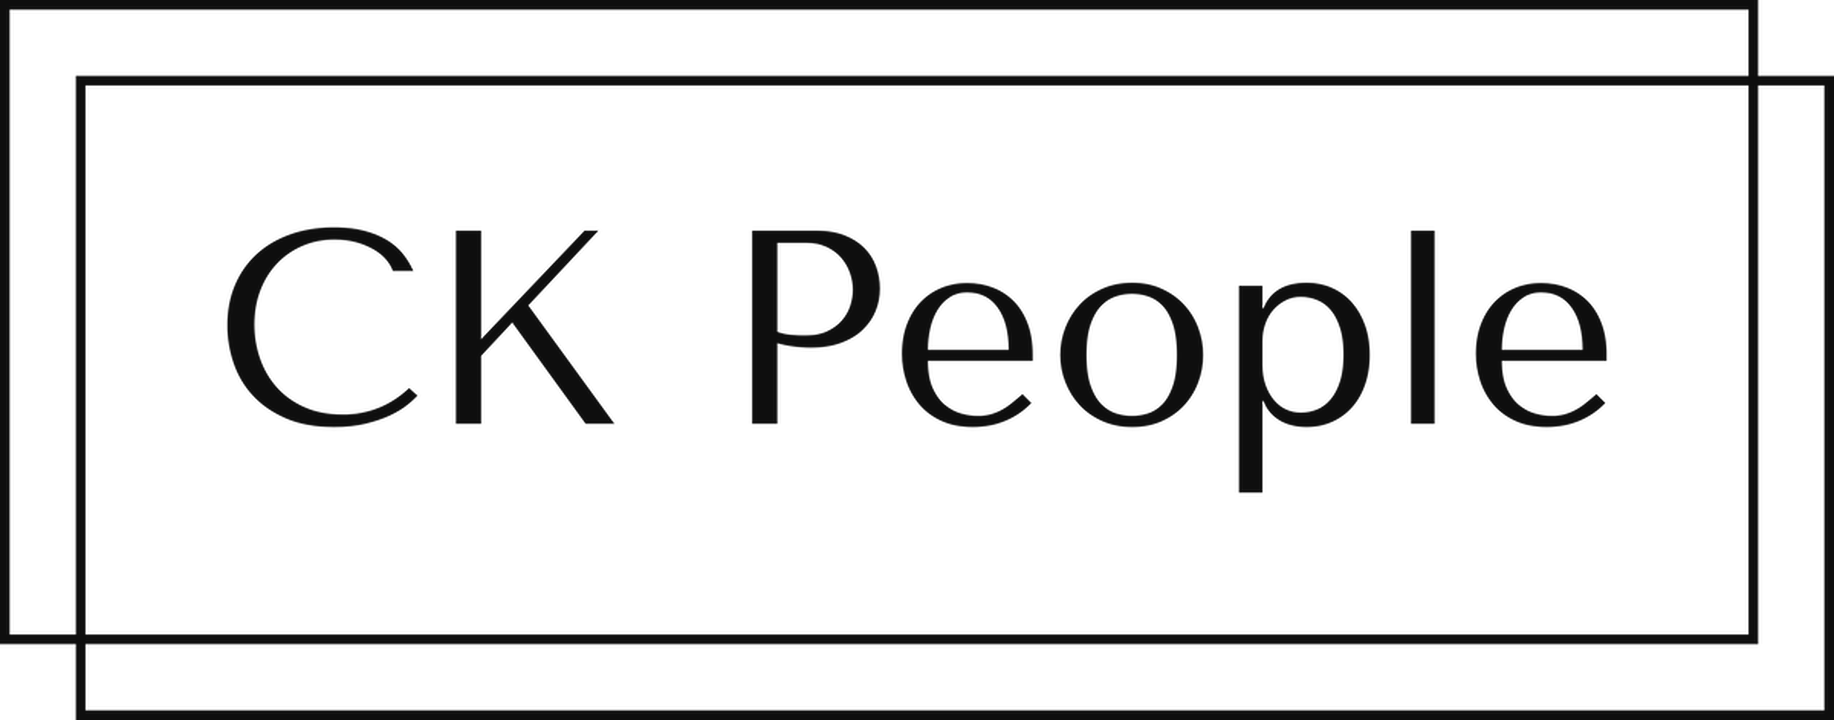 CK People